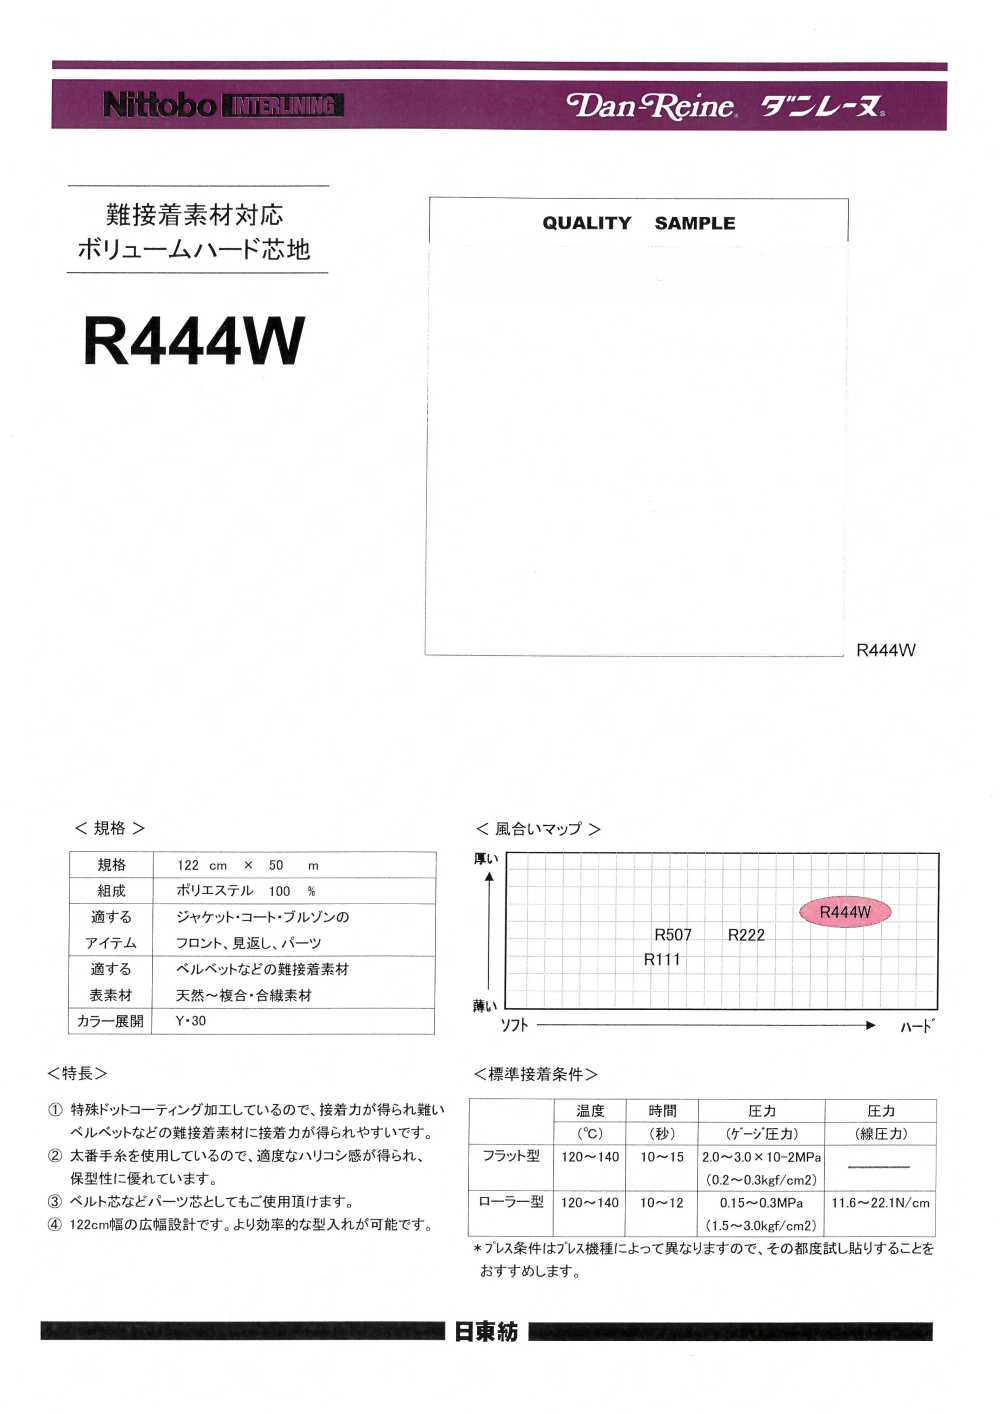 R444W Volumenharte Einlage Für Schwer Zu Verklebende Materialien 100D Nittobo